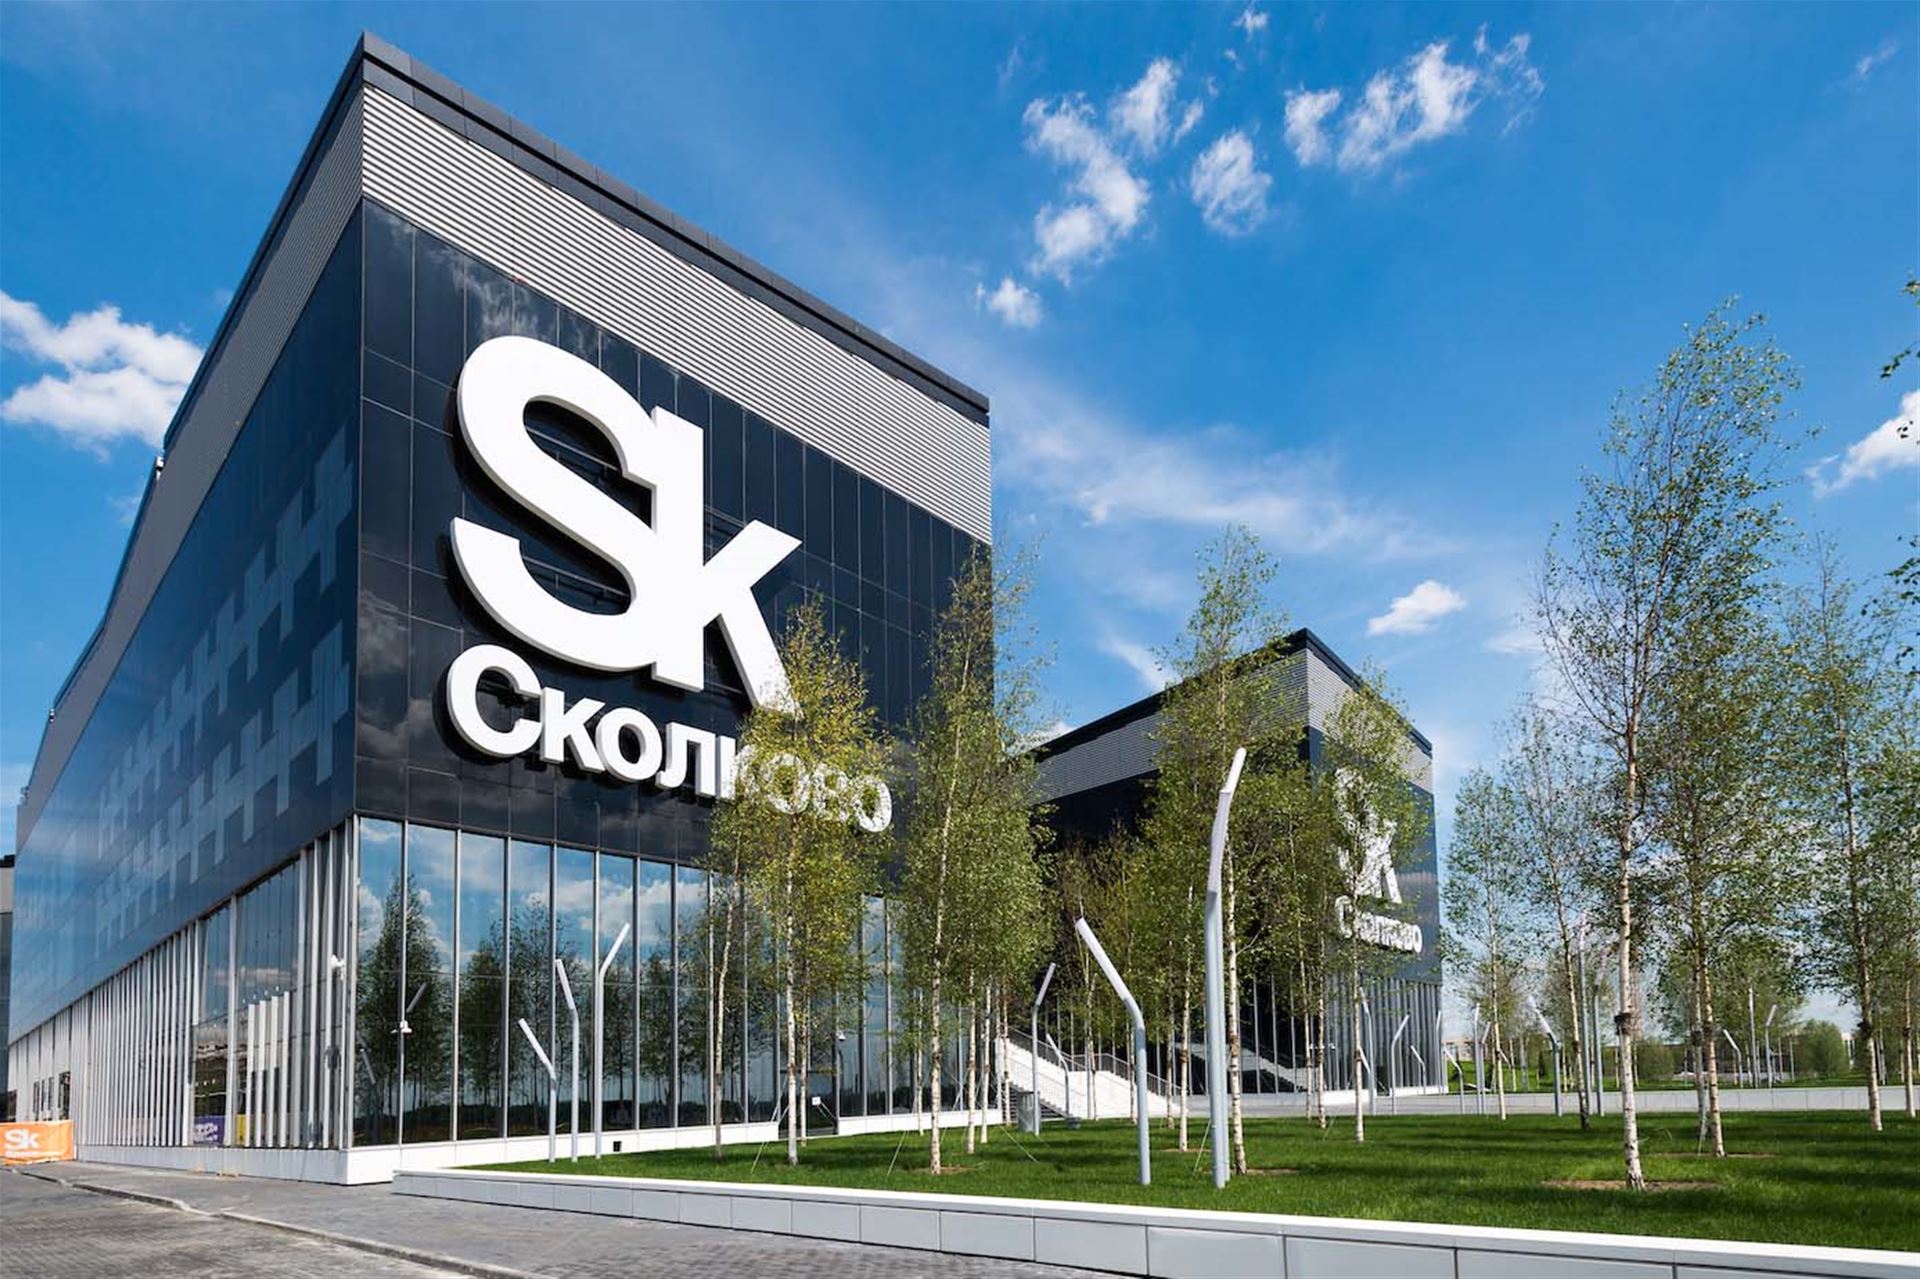 Eastern Europe's Largest Innovation Center Skolkovo Arrives in India